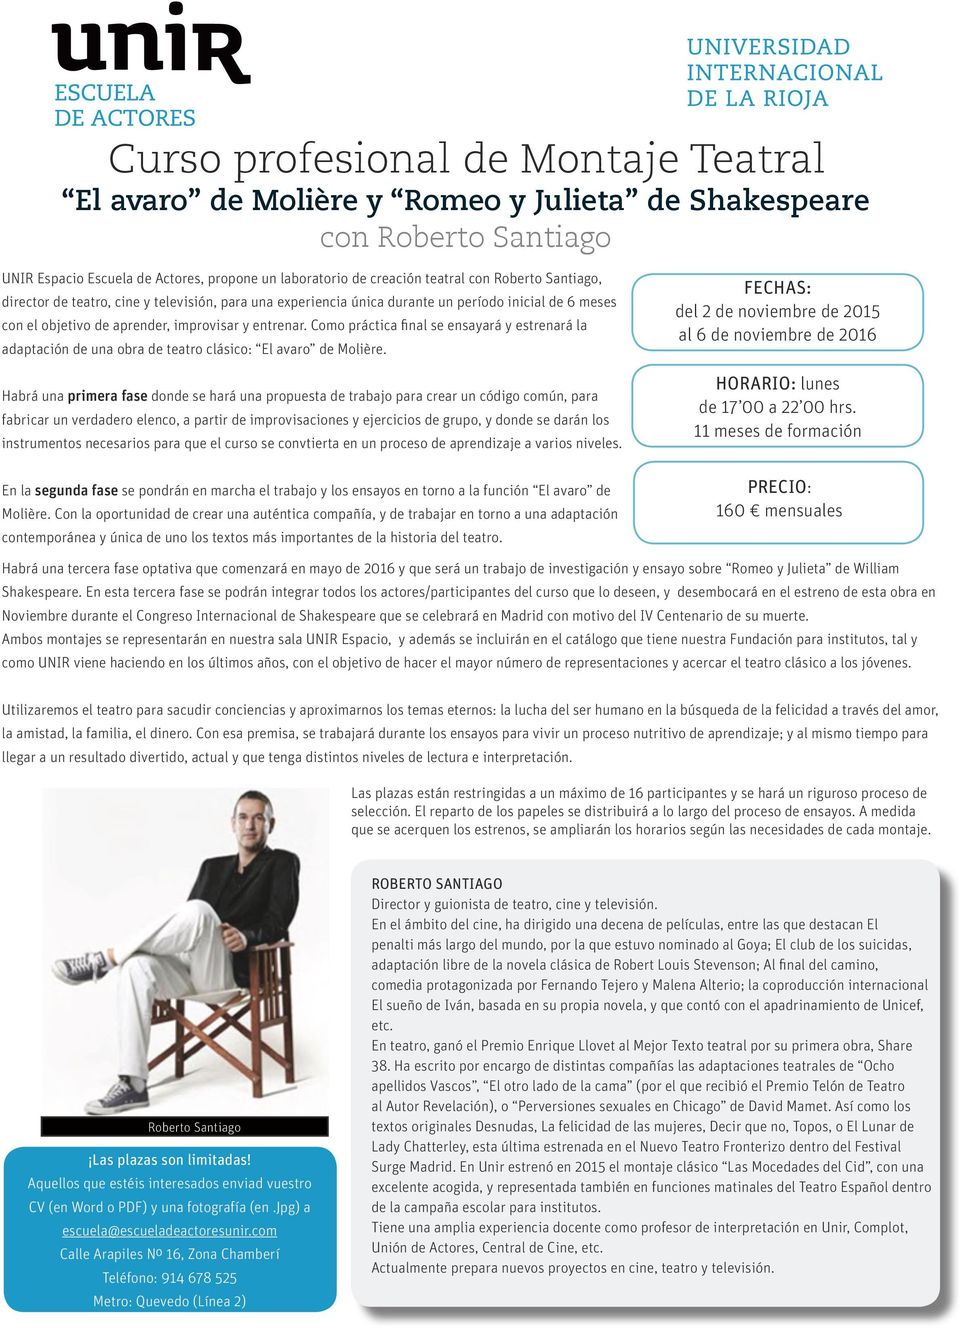 Como práctica final se ensayará y estrenará la adaptación de una obra de teatro clásico: El avaro de Molière.